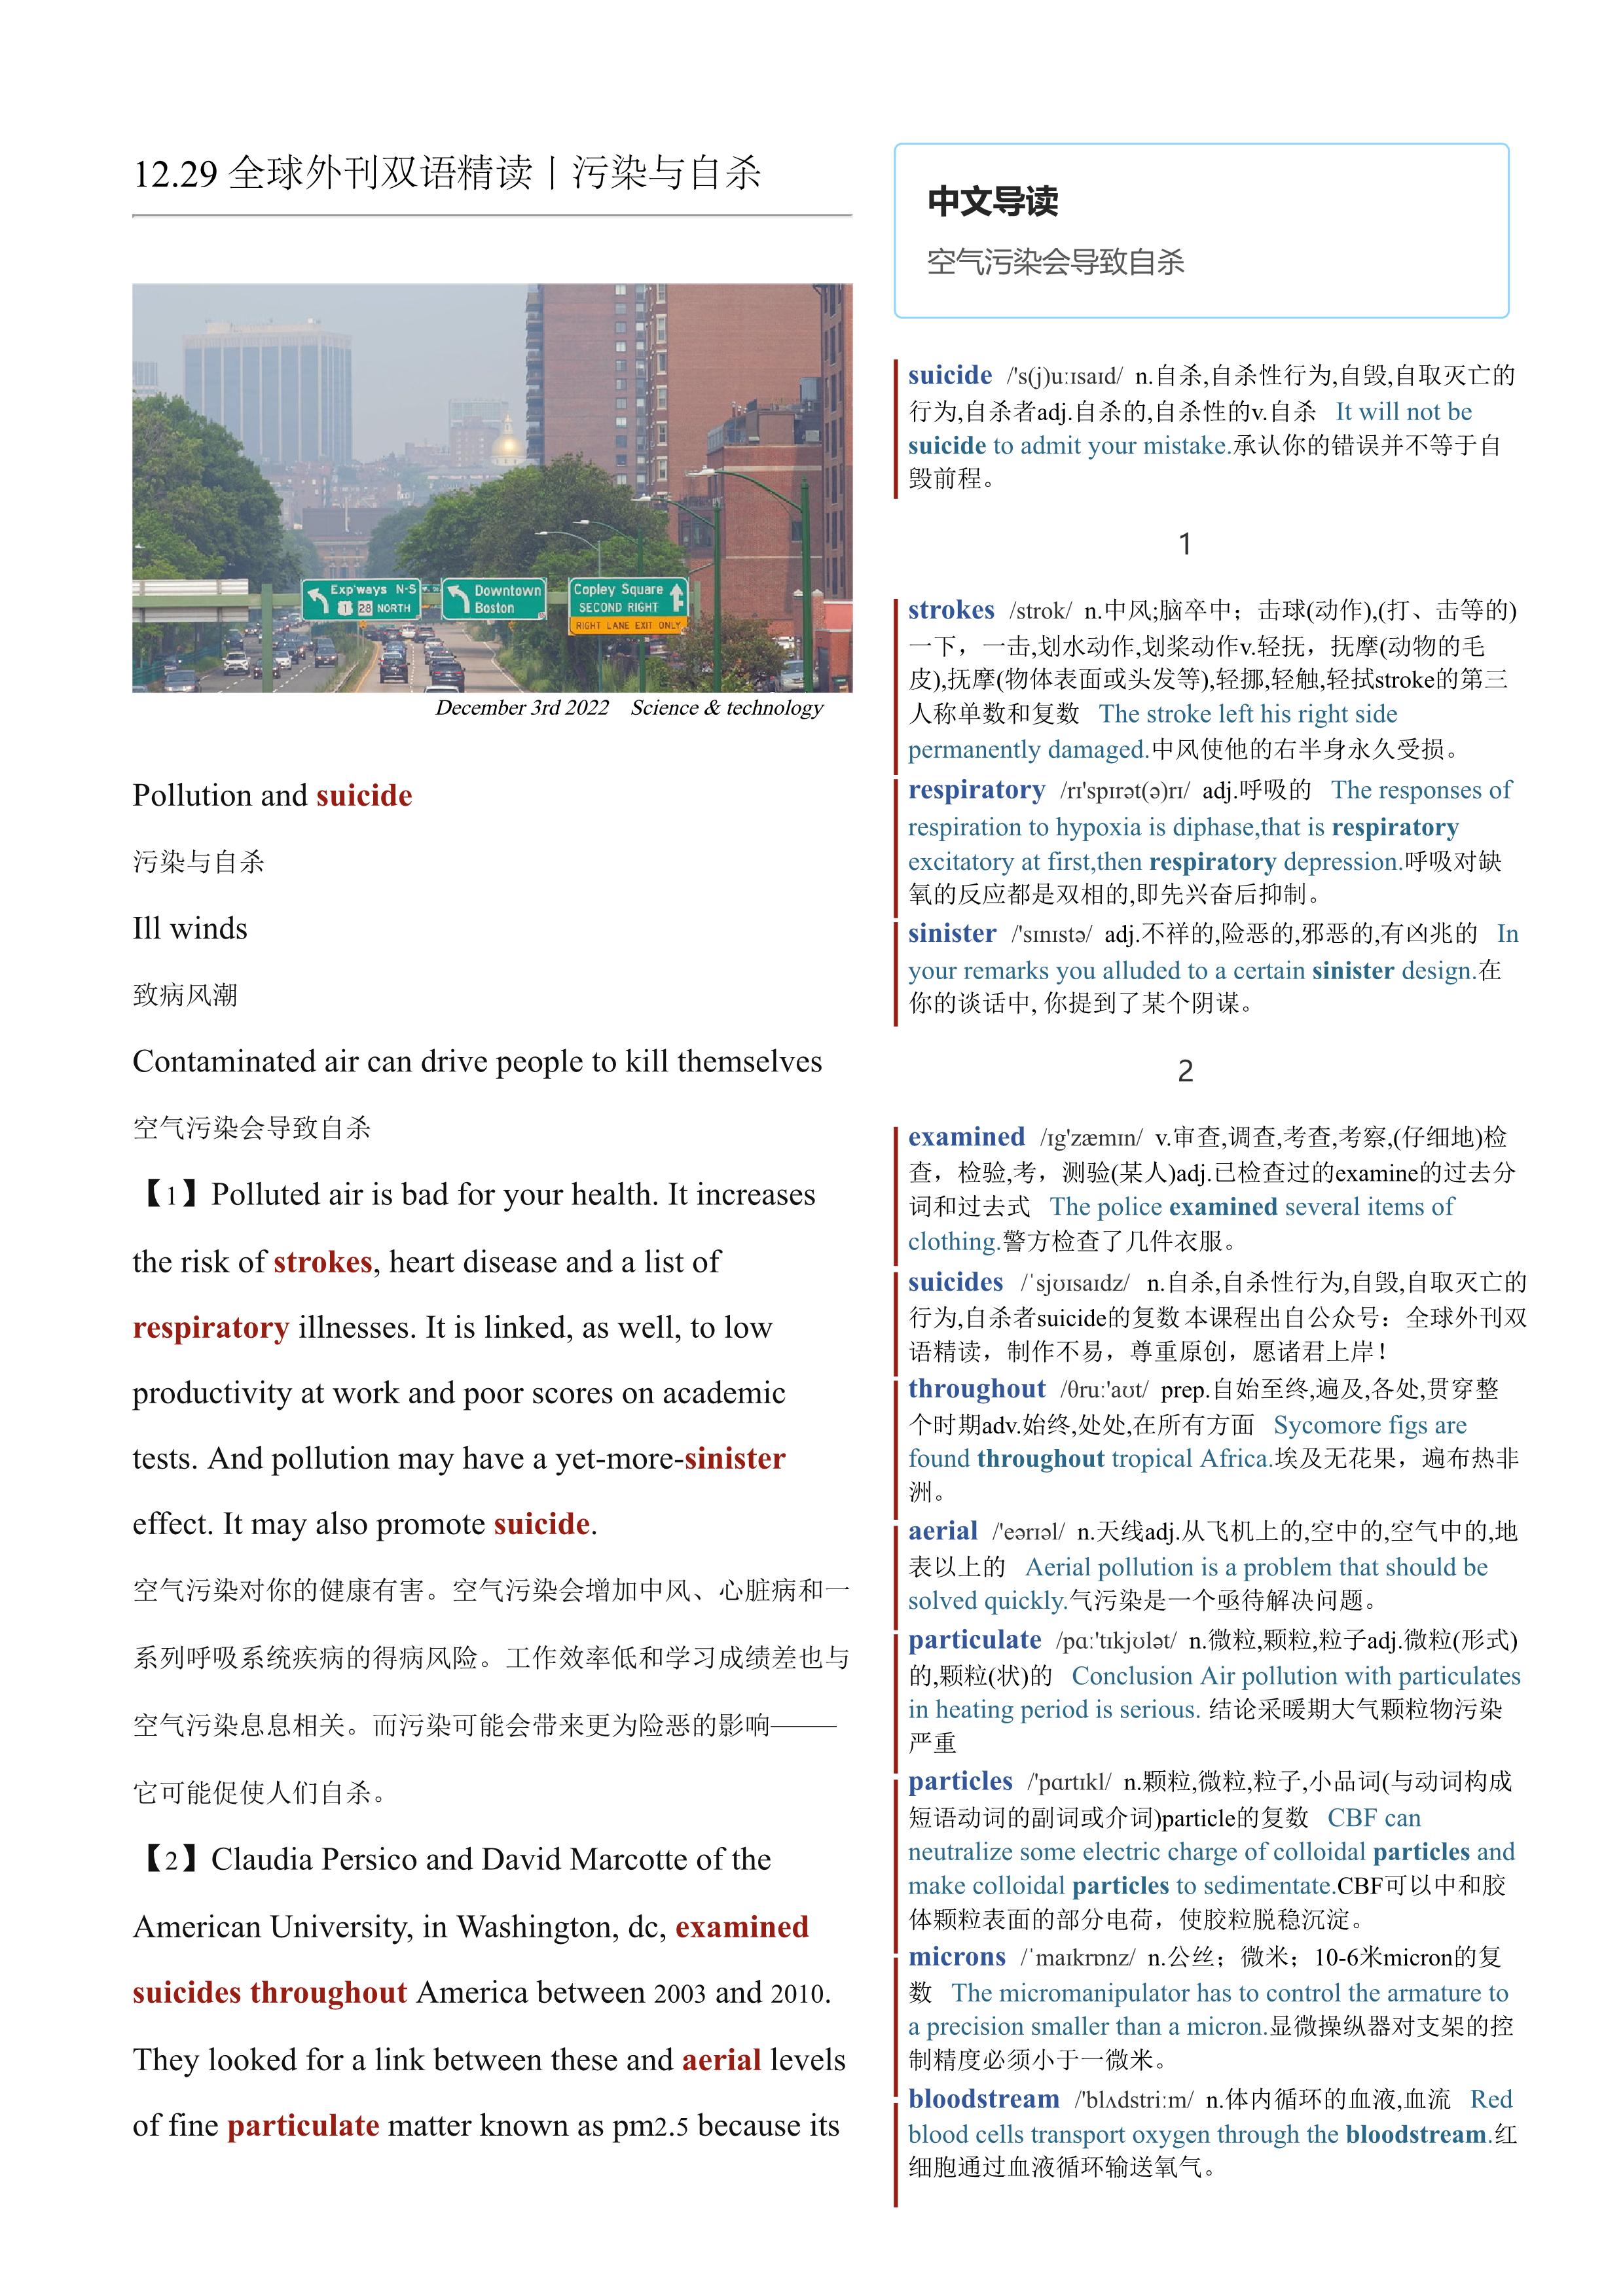 2022.12.29 经济学人双语精读丨污染与自杀 (.PDF/DOC/MP3)